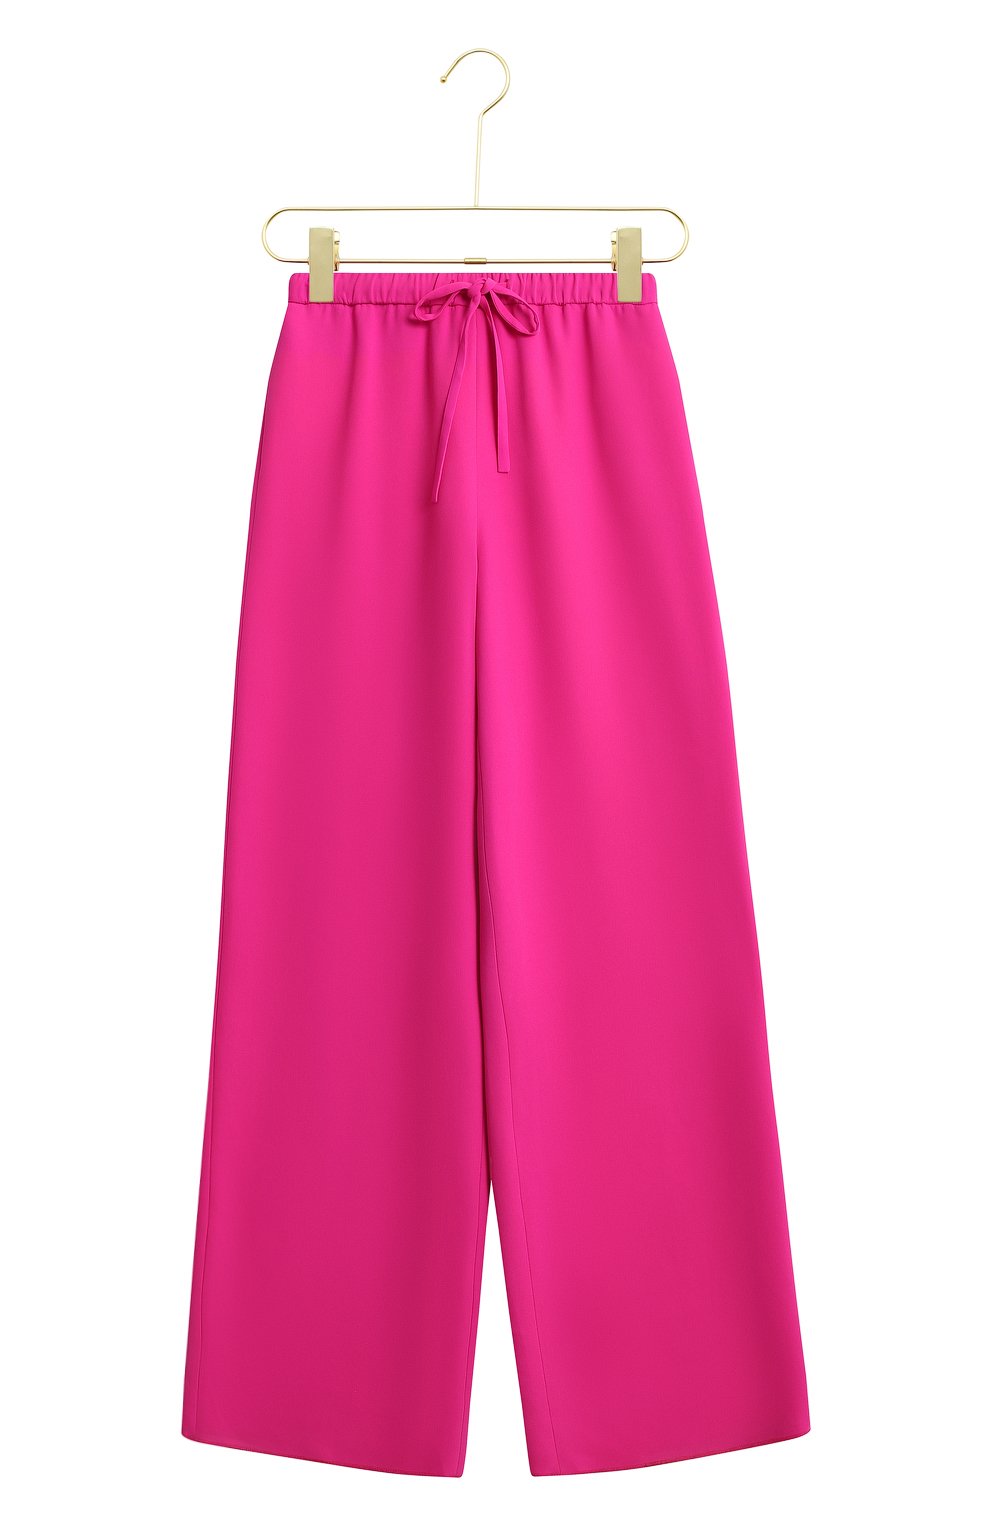 Шелковые брюки | Valentino | Розовый - 1